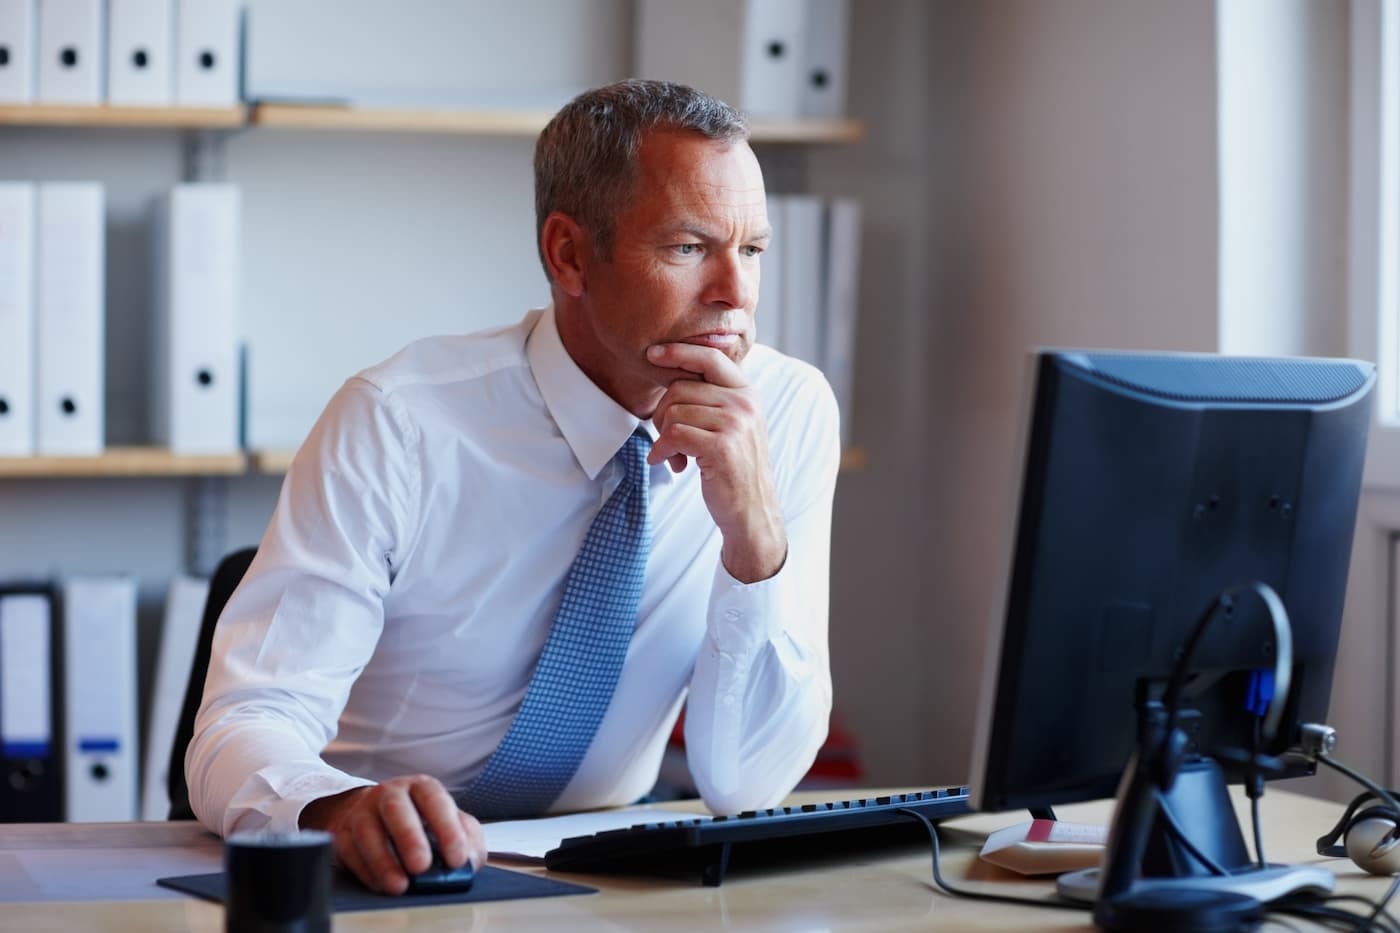 Professional man looking at a computer monitor